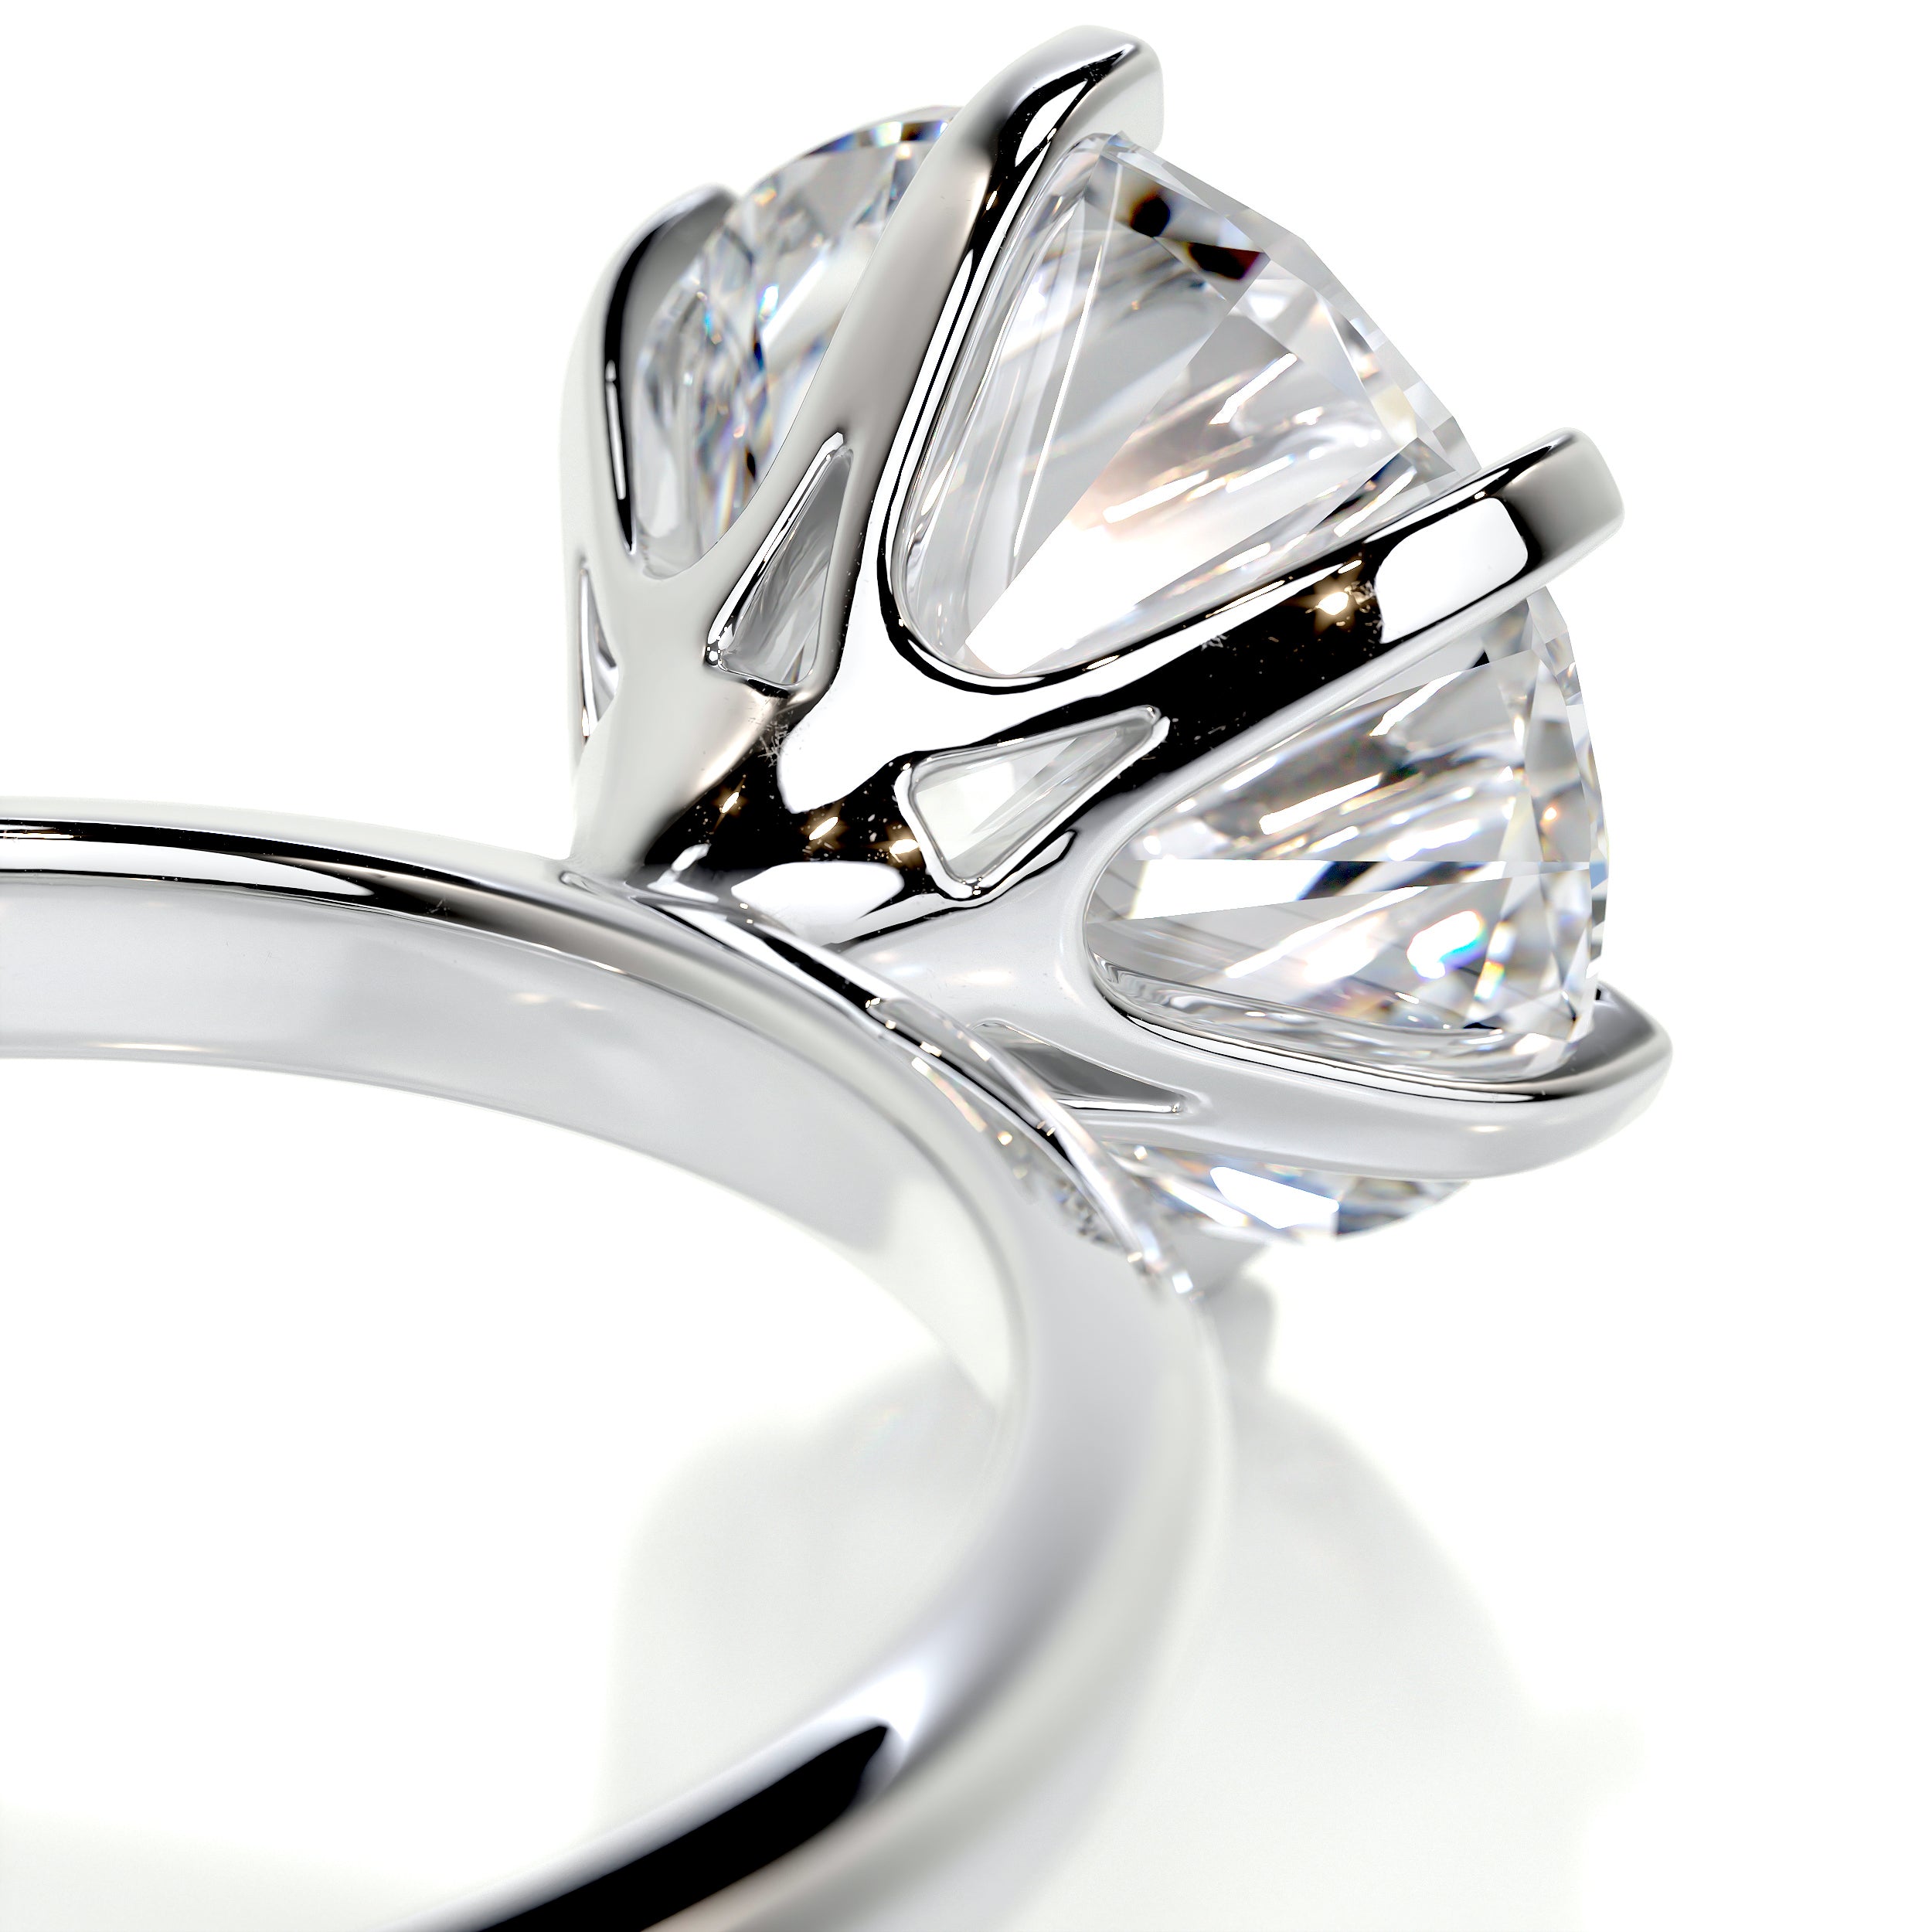 Samantha Diamond Engagement Ring   (2.5 Carat) -14K White Gold